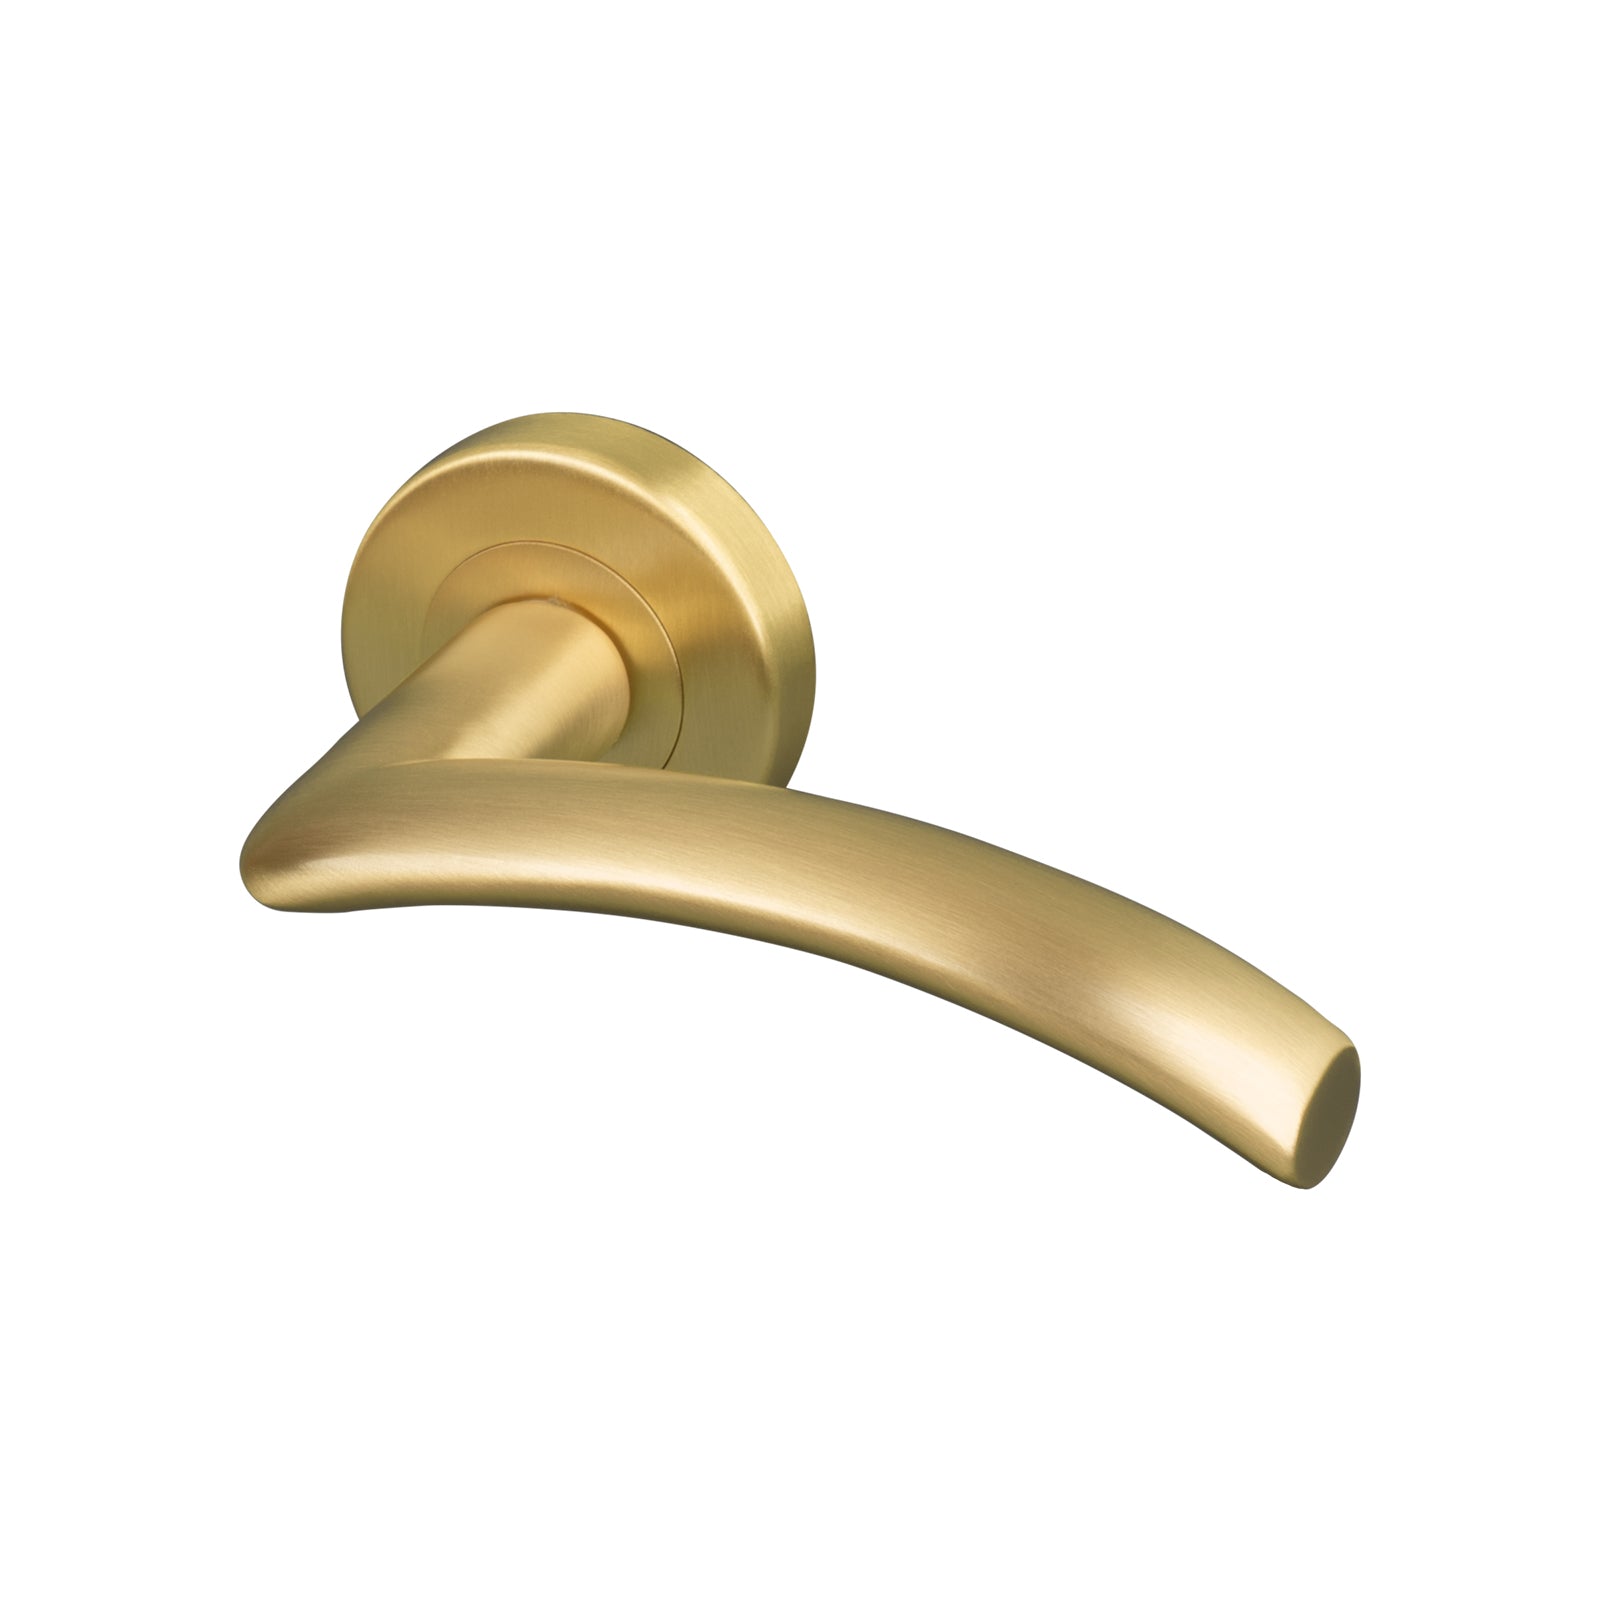 satin brass Centaur round rose door handles, solid brass handles SHOW